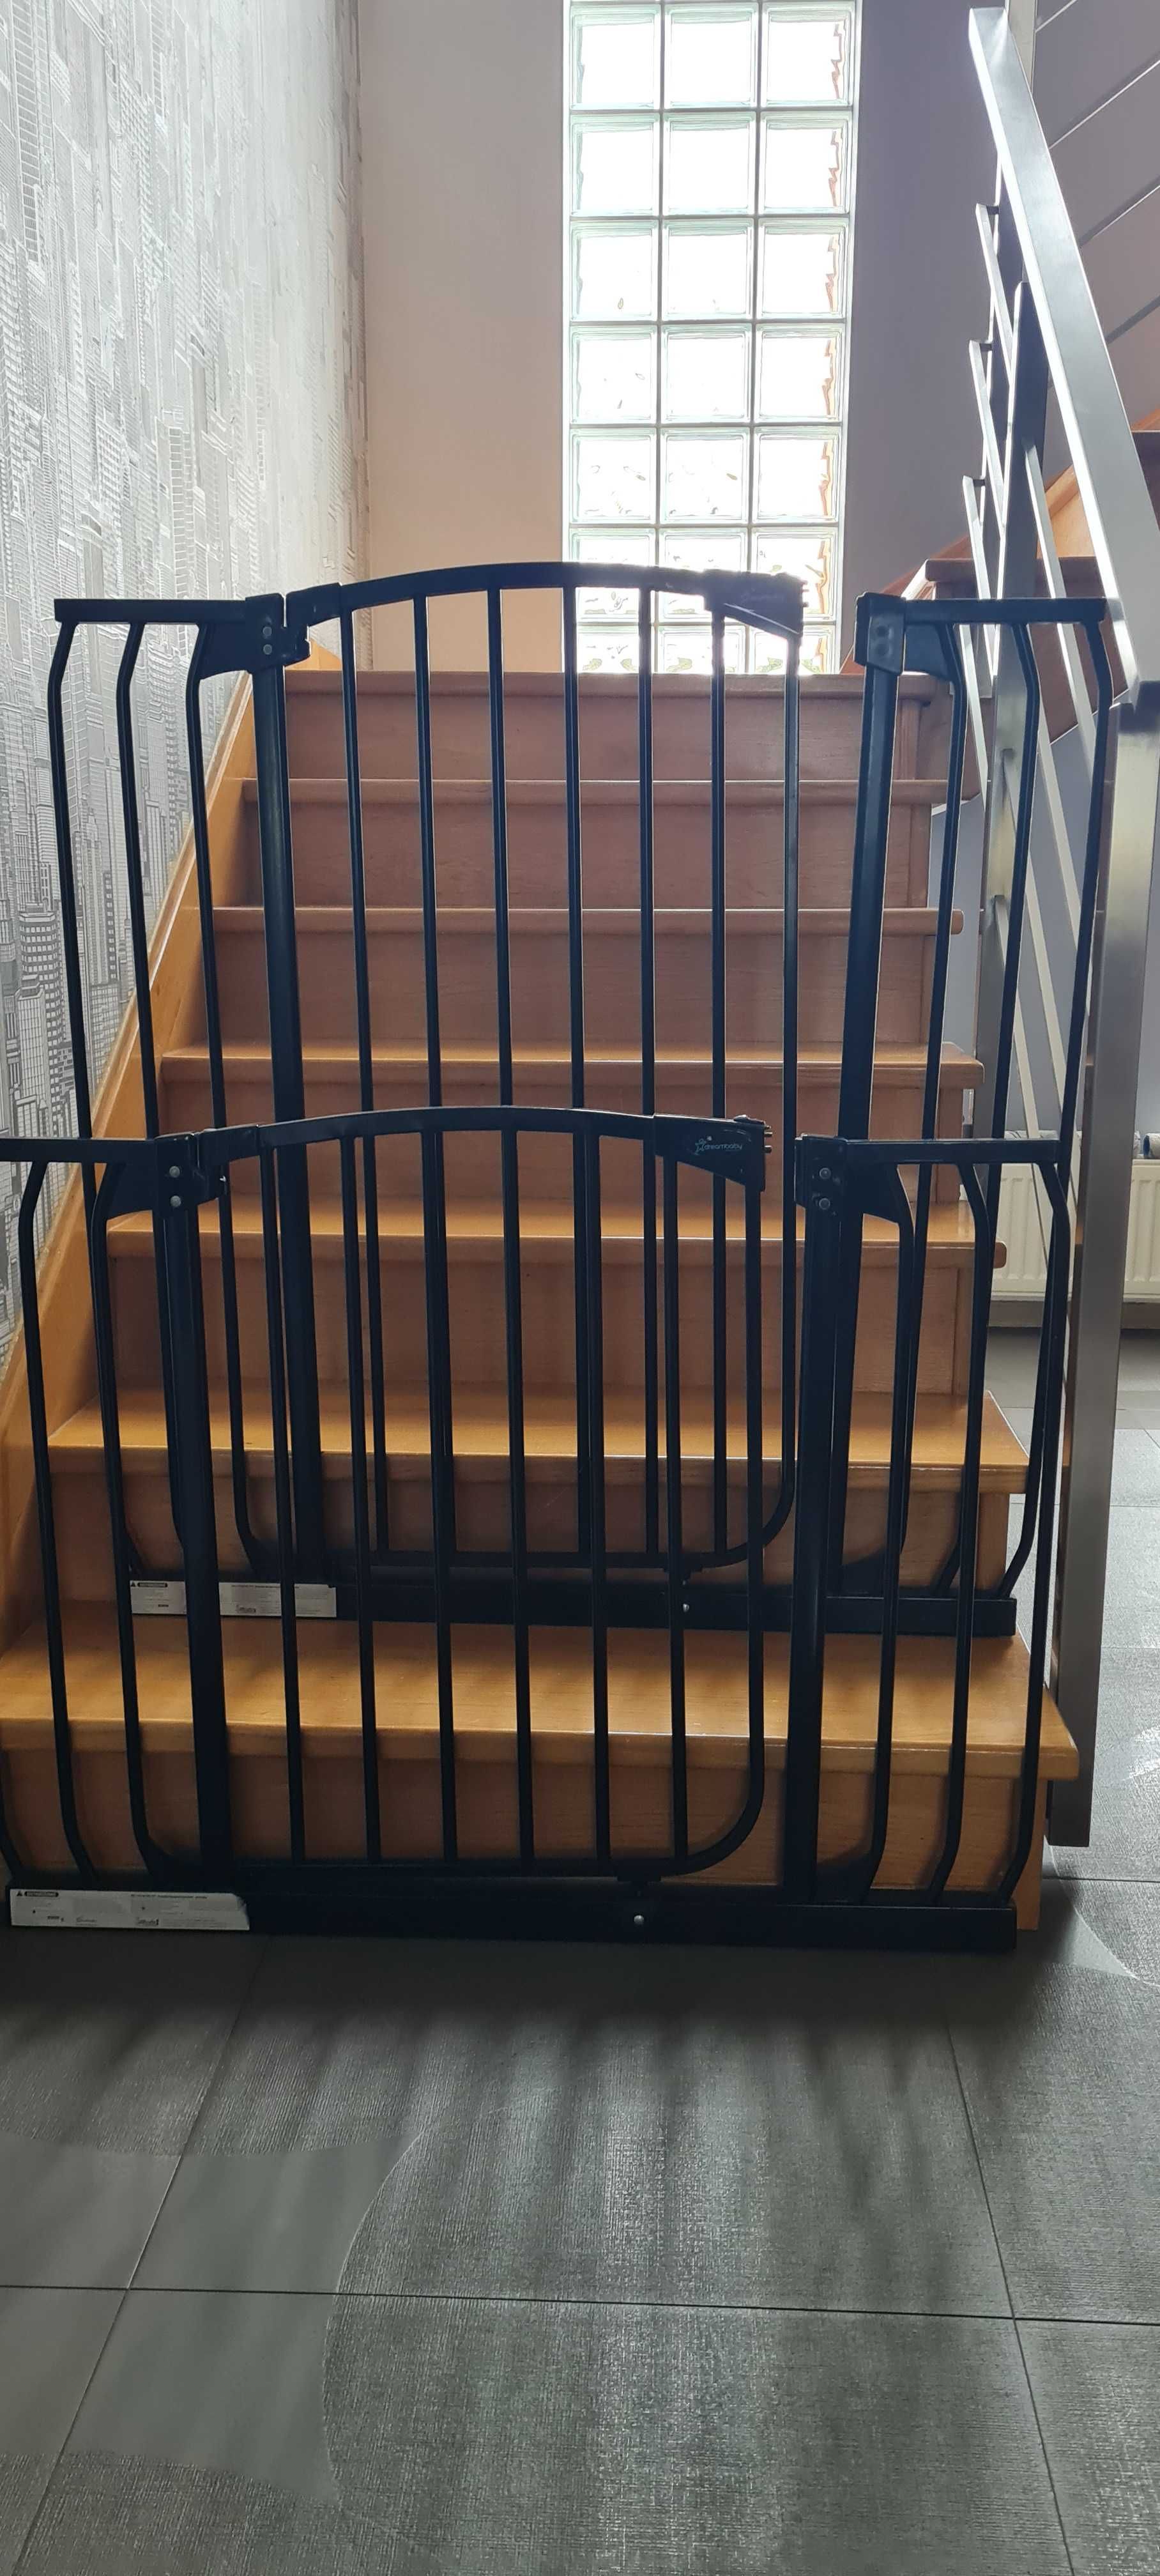 bramka zabezpieczająca na schody dla dzieci- 2szt